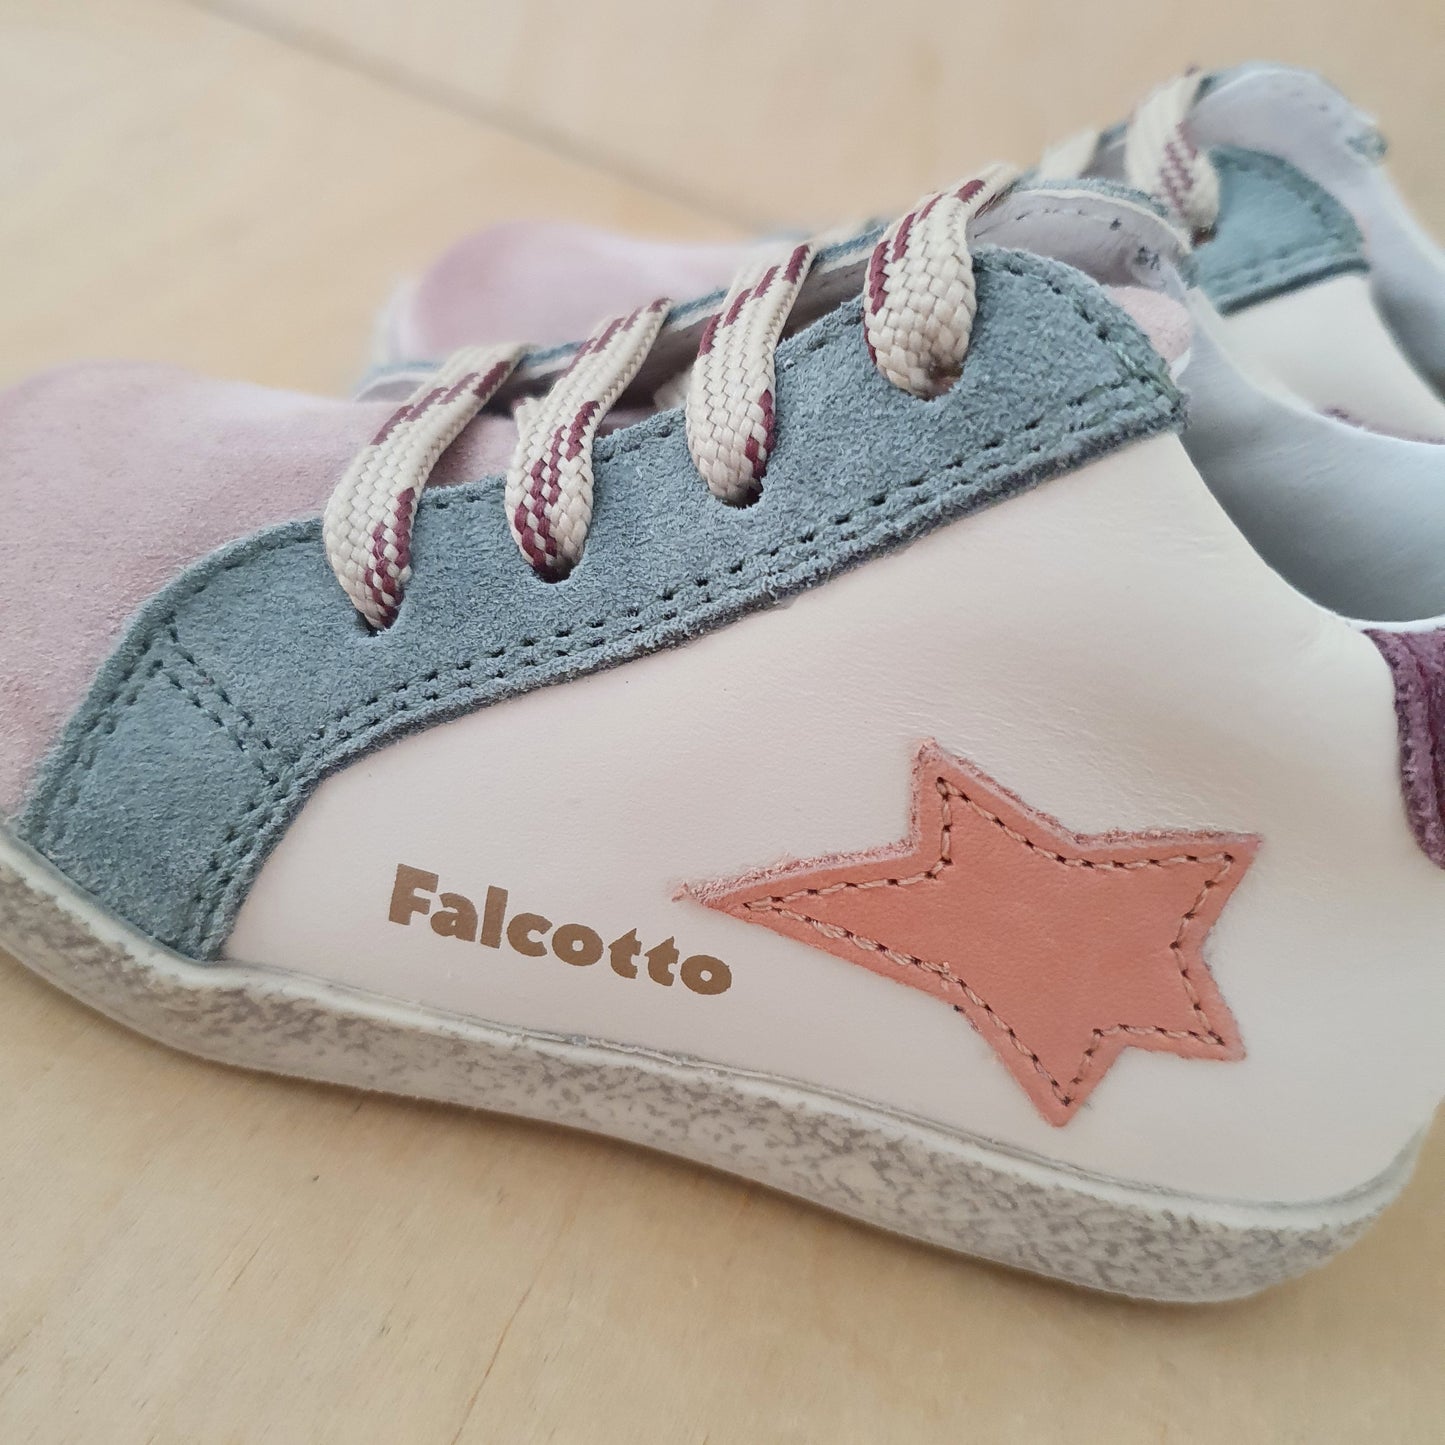 FALCOTTO - stapsneaker alnoite  - cipria milk magnolia